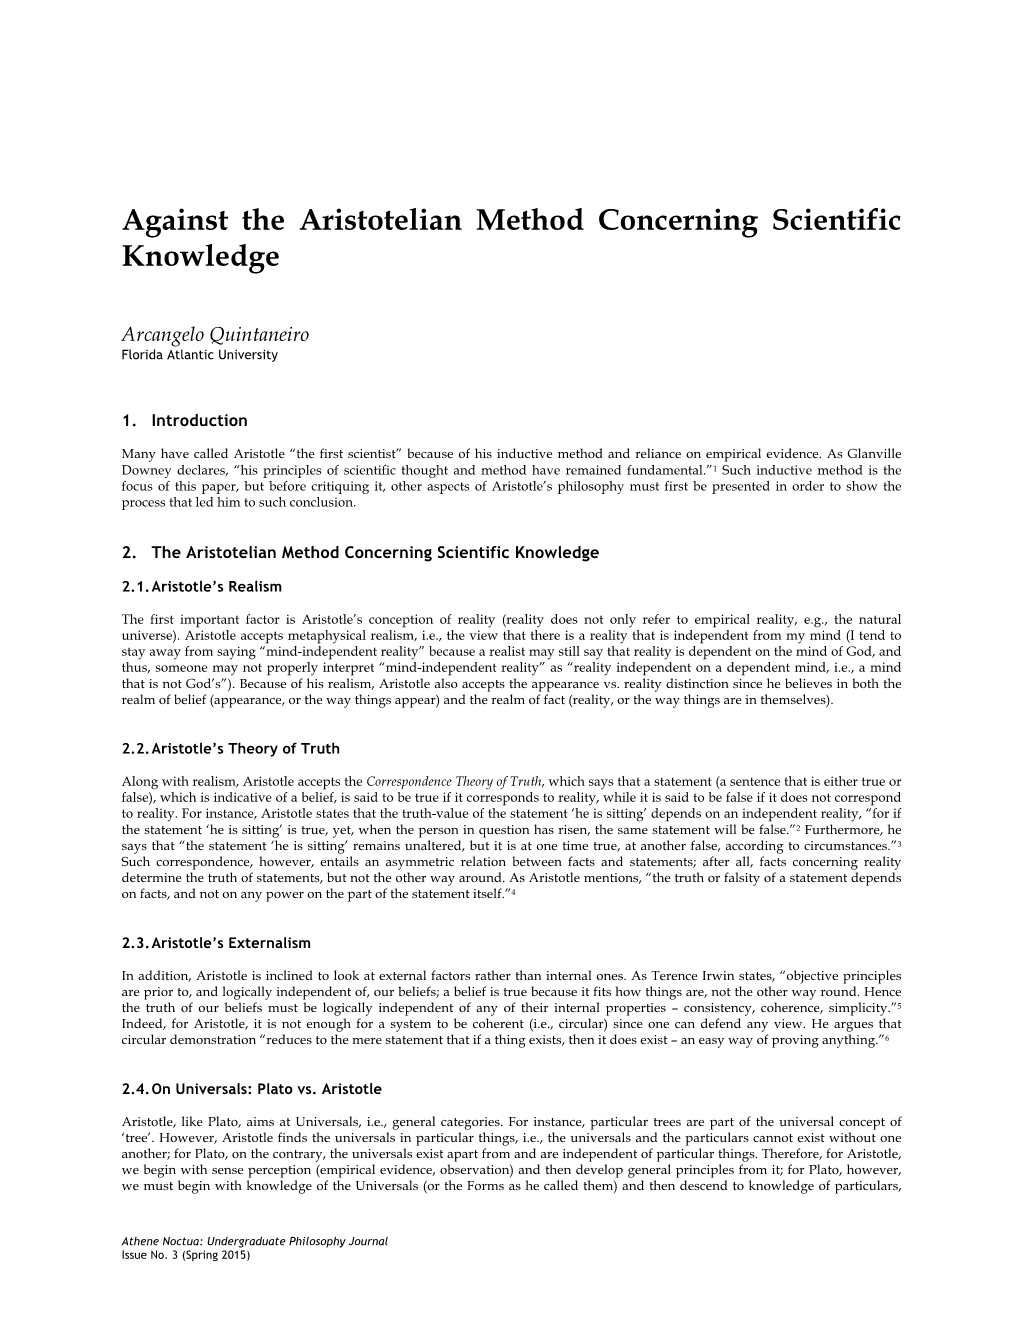 Against the Aristotelian Method Concerning Scientific Knowledge